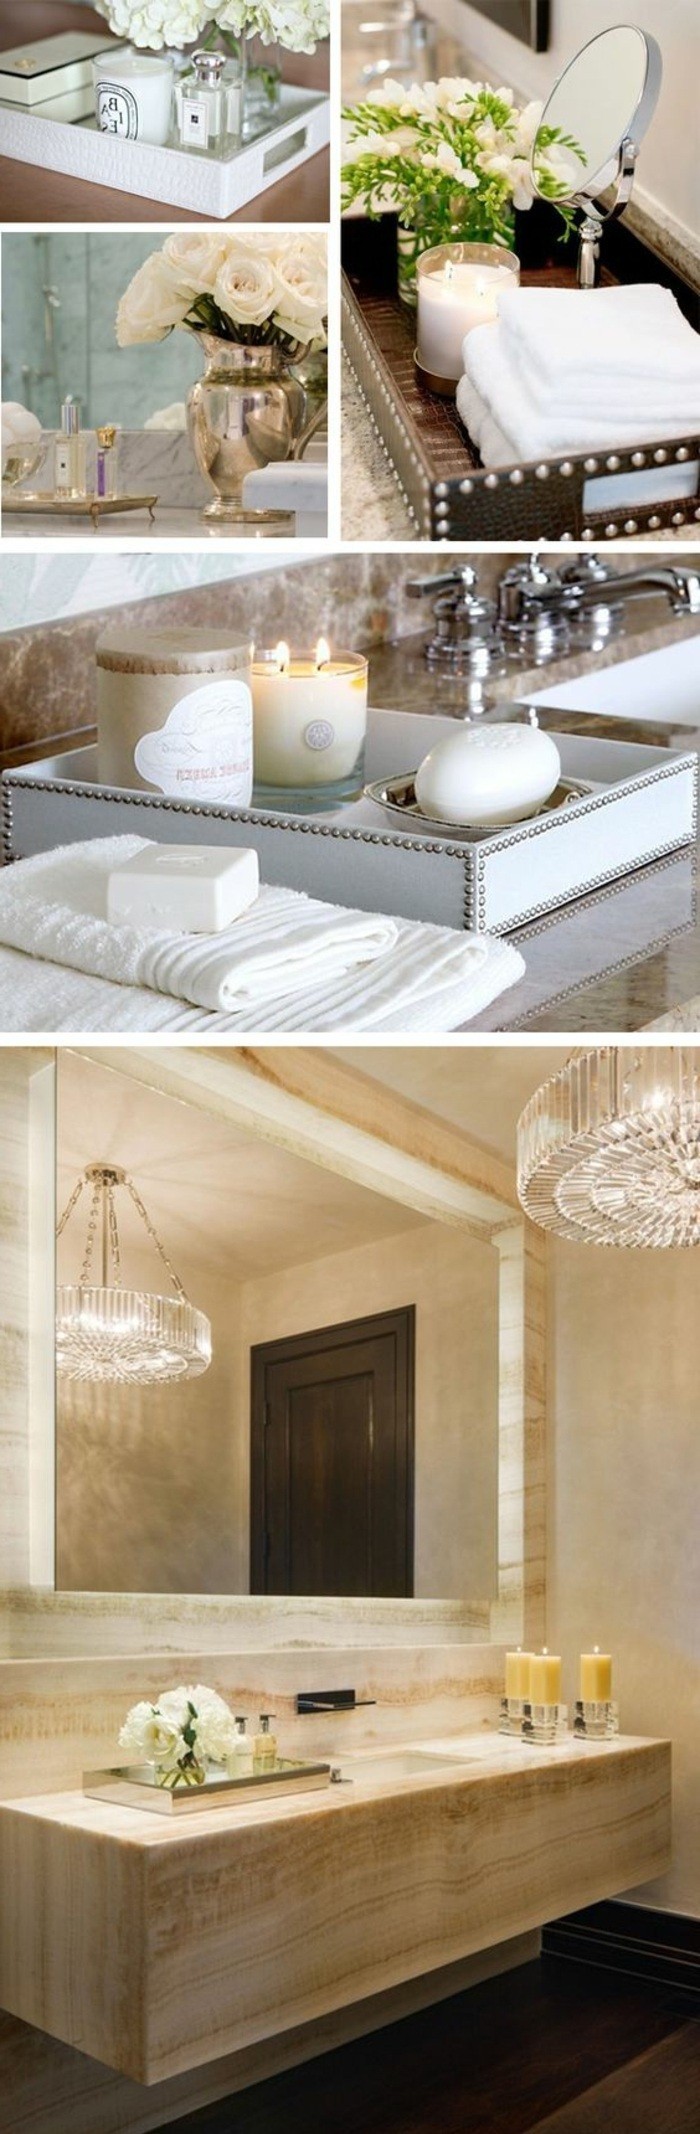 3-badezimmer-deko-moderne-bader-accessoires-und-dekorationen-groser-kronleuchter-aus-kristall